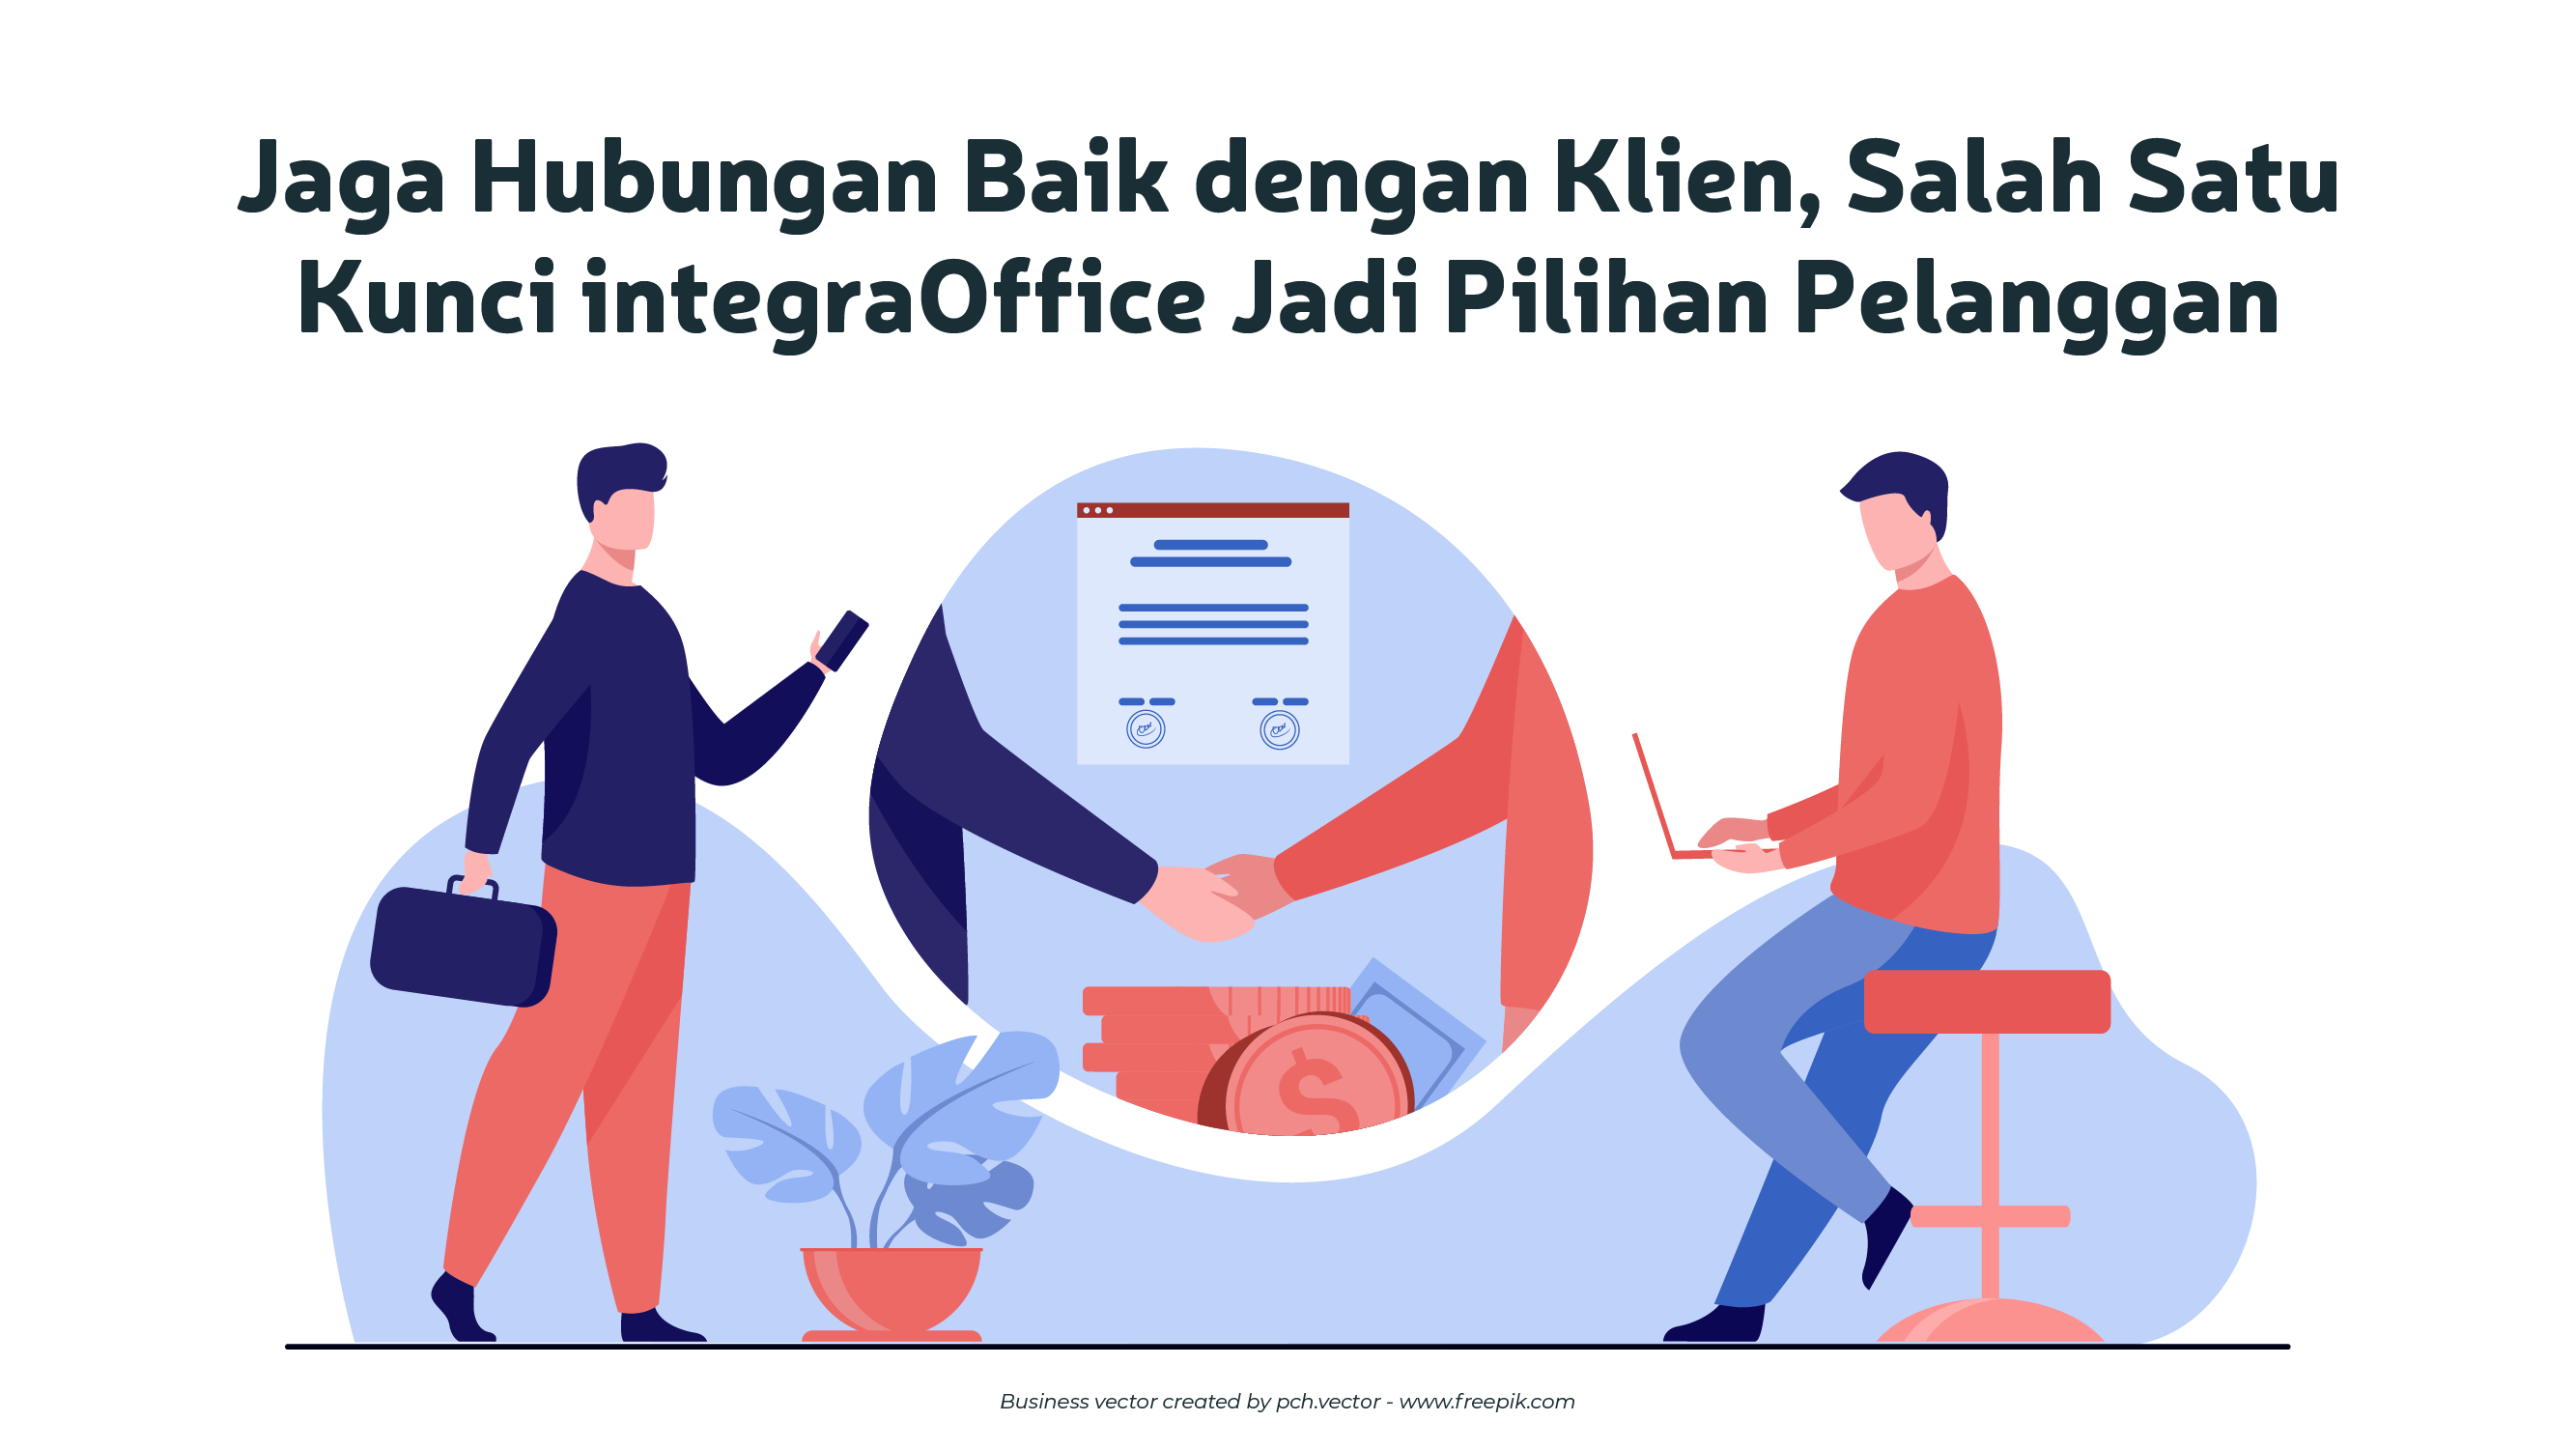 Jaga Hubungan Baik Dengan Klien, Salah Satu Kunci integraOffice Jadi Pilihan Pelanggan-68